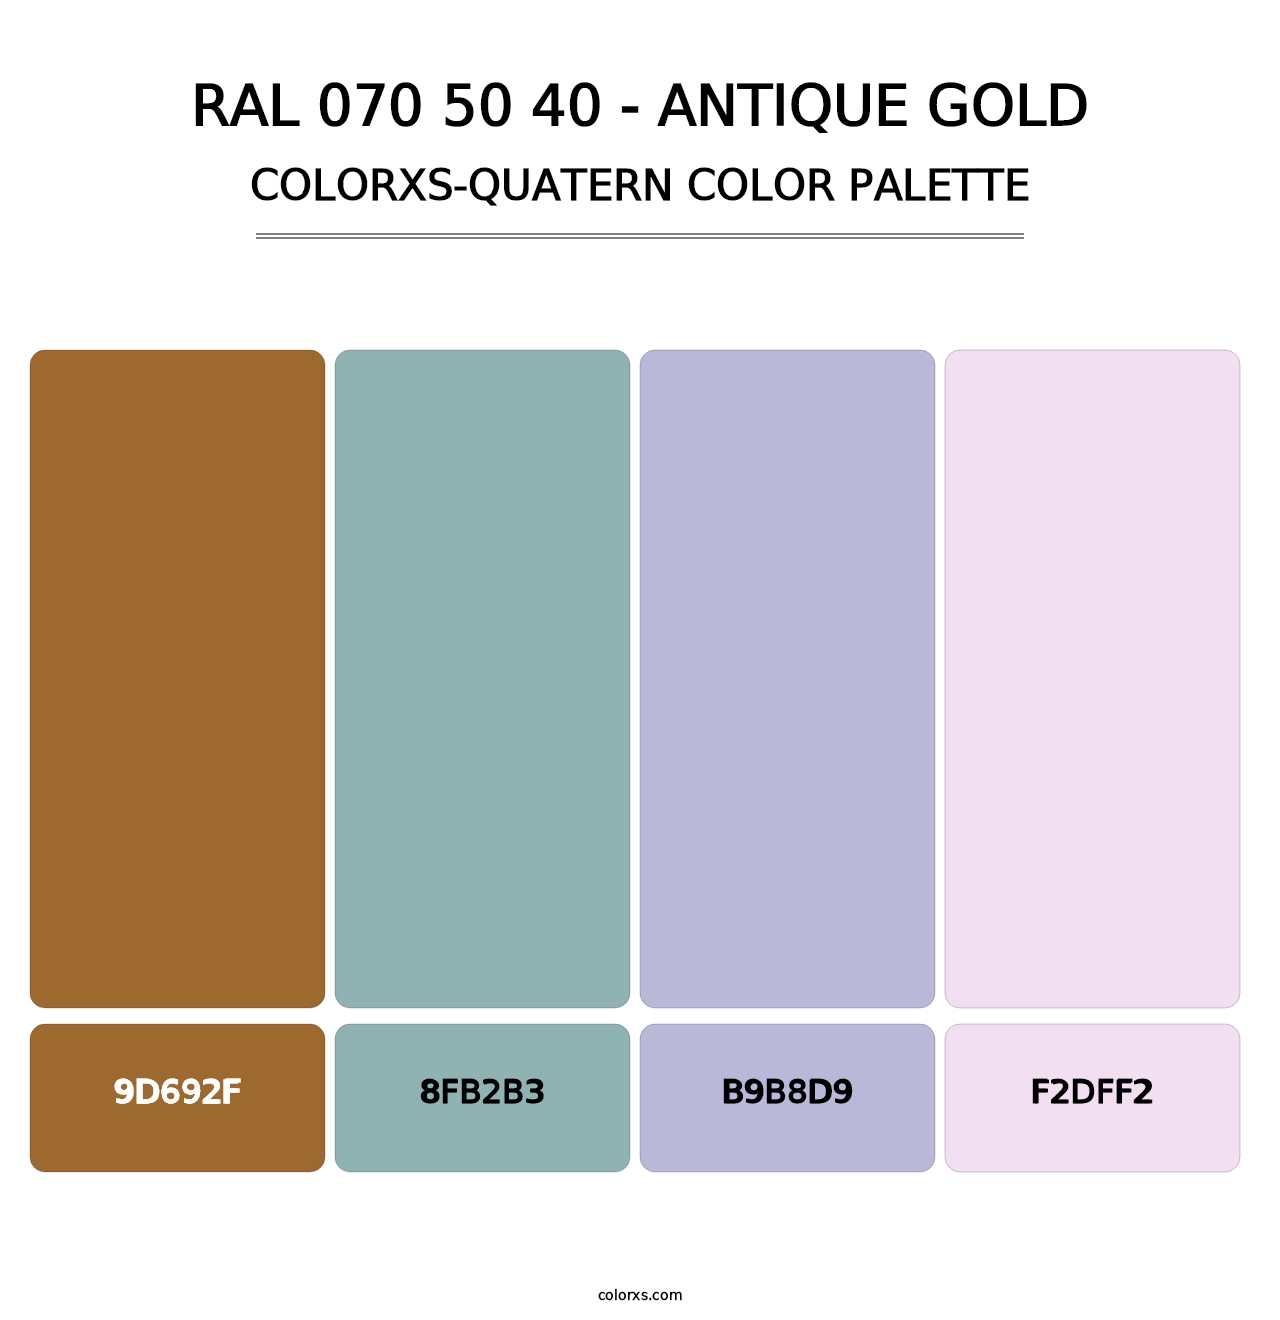 RAL 070 50 40 - Antique Gold - Colorxs Quatern Palette